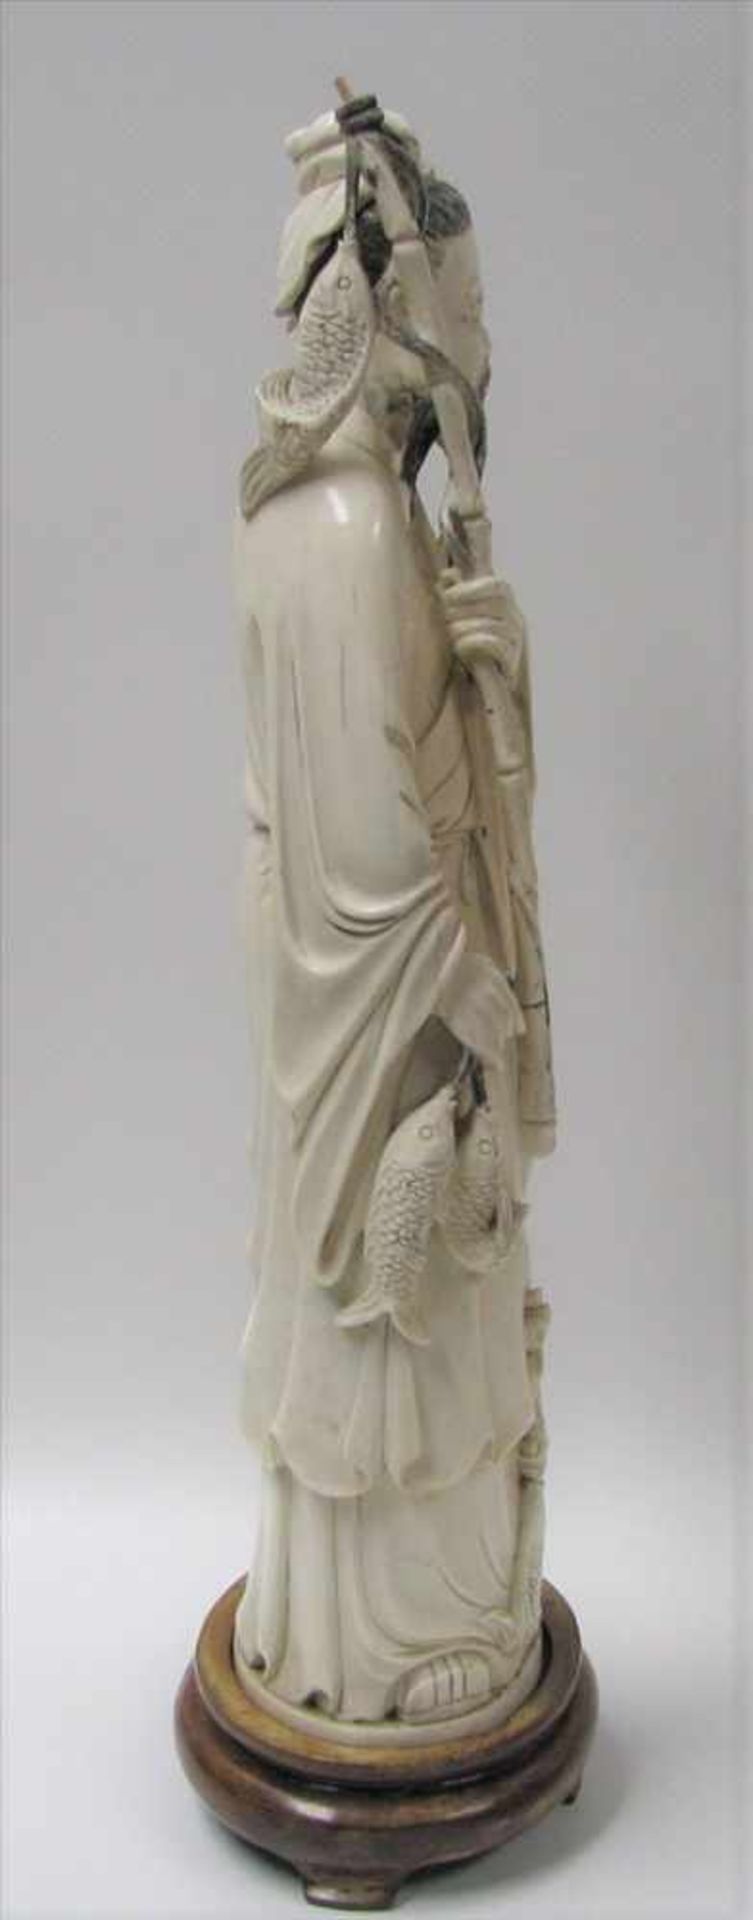 Stehender Fischer, China, um 1900, Elfenbein beschnitzt, teils geschwärzt, h 35 cm, d 9 cm. - Image 4 of 5